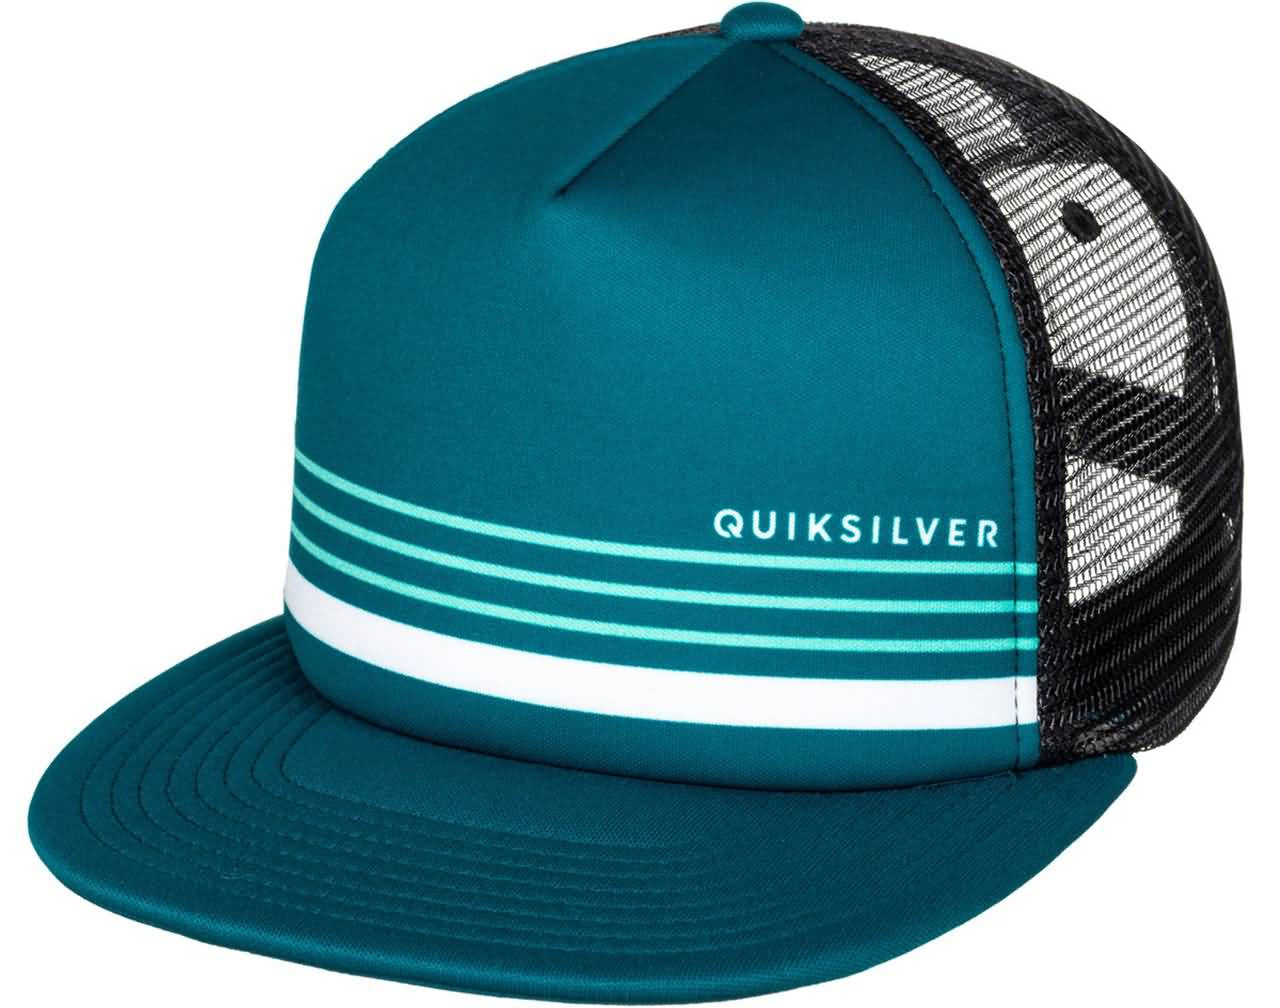 Quiksilver Surf Fall 2017 Headwear | Beach Lifestyle Caps